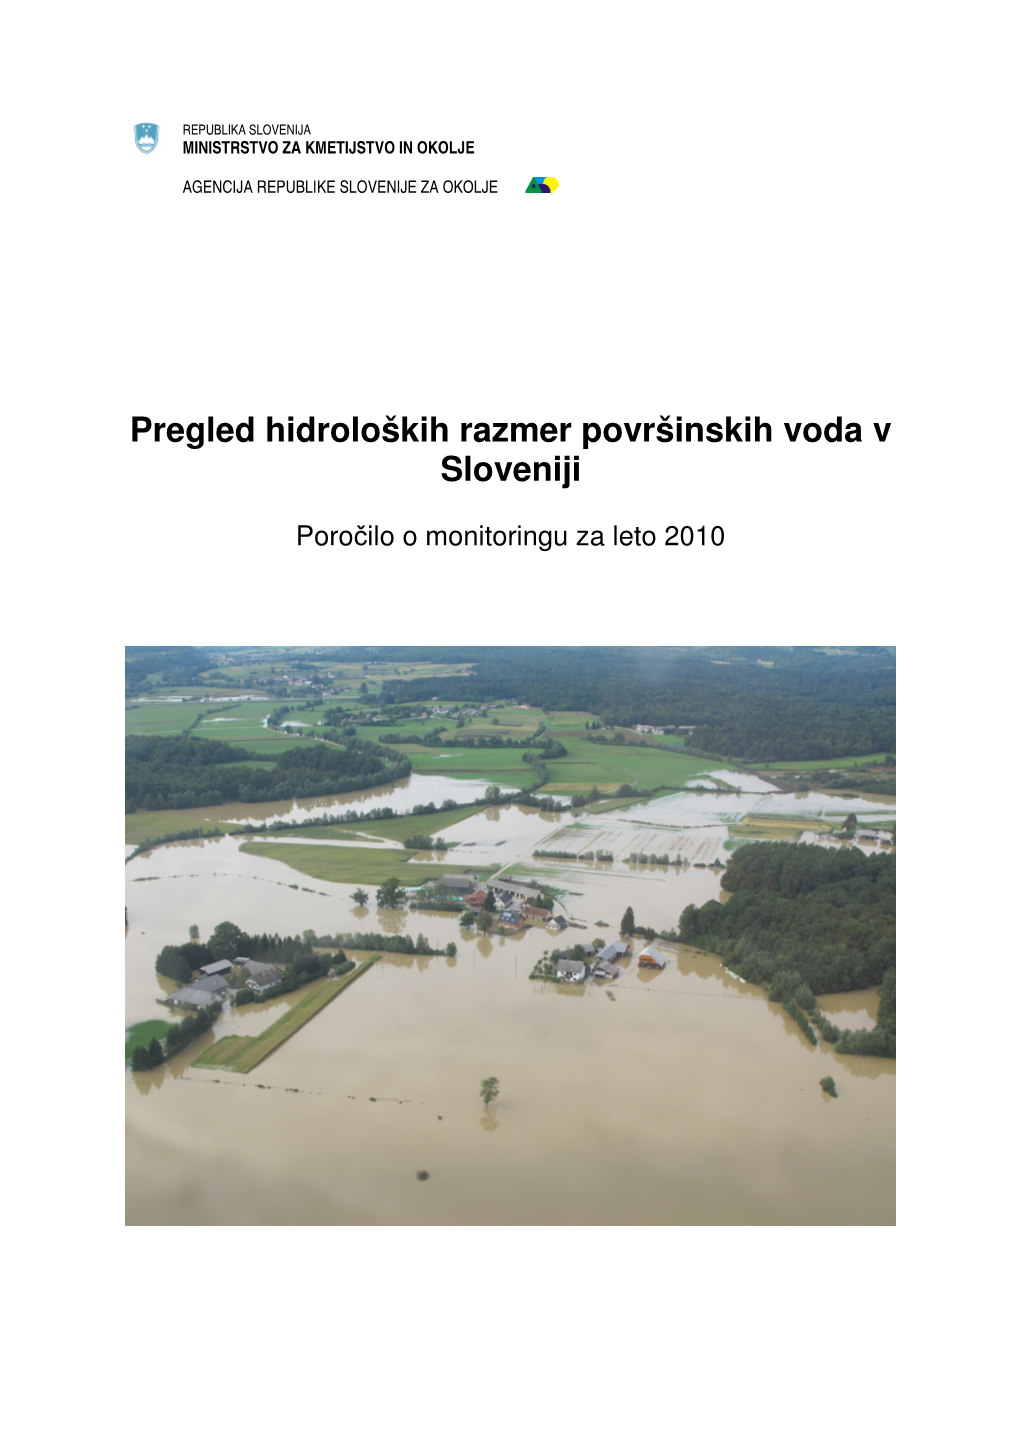 Pregled Hidroloških Razmer Površinskih Voda V Sloveniji